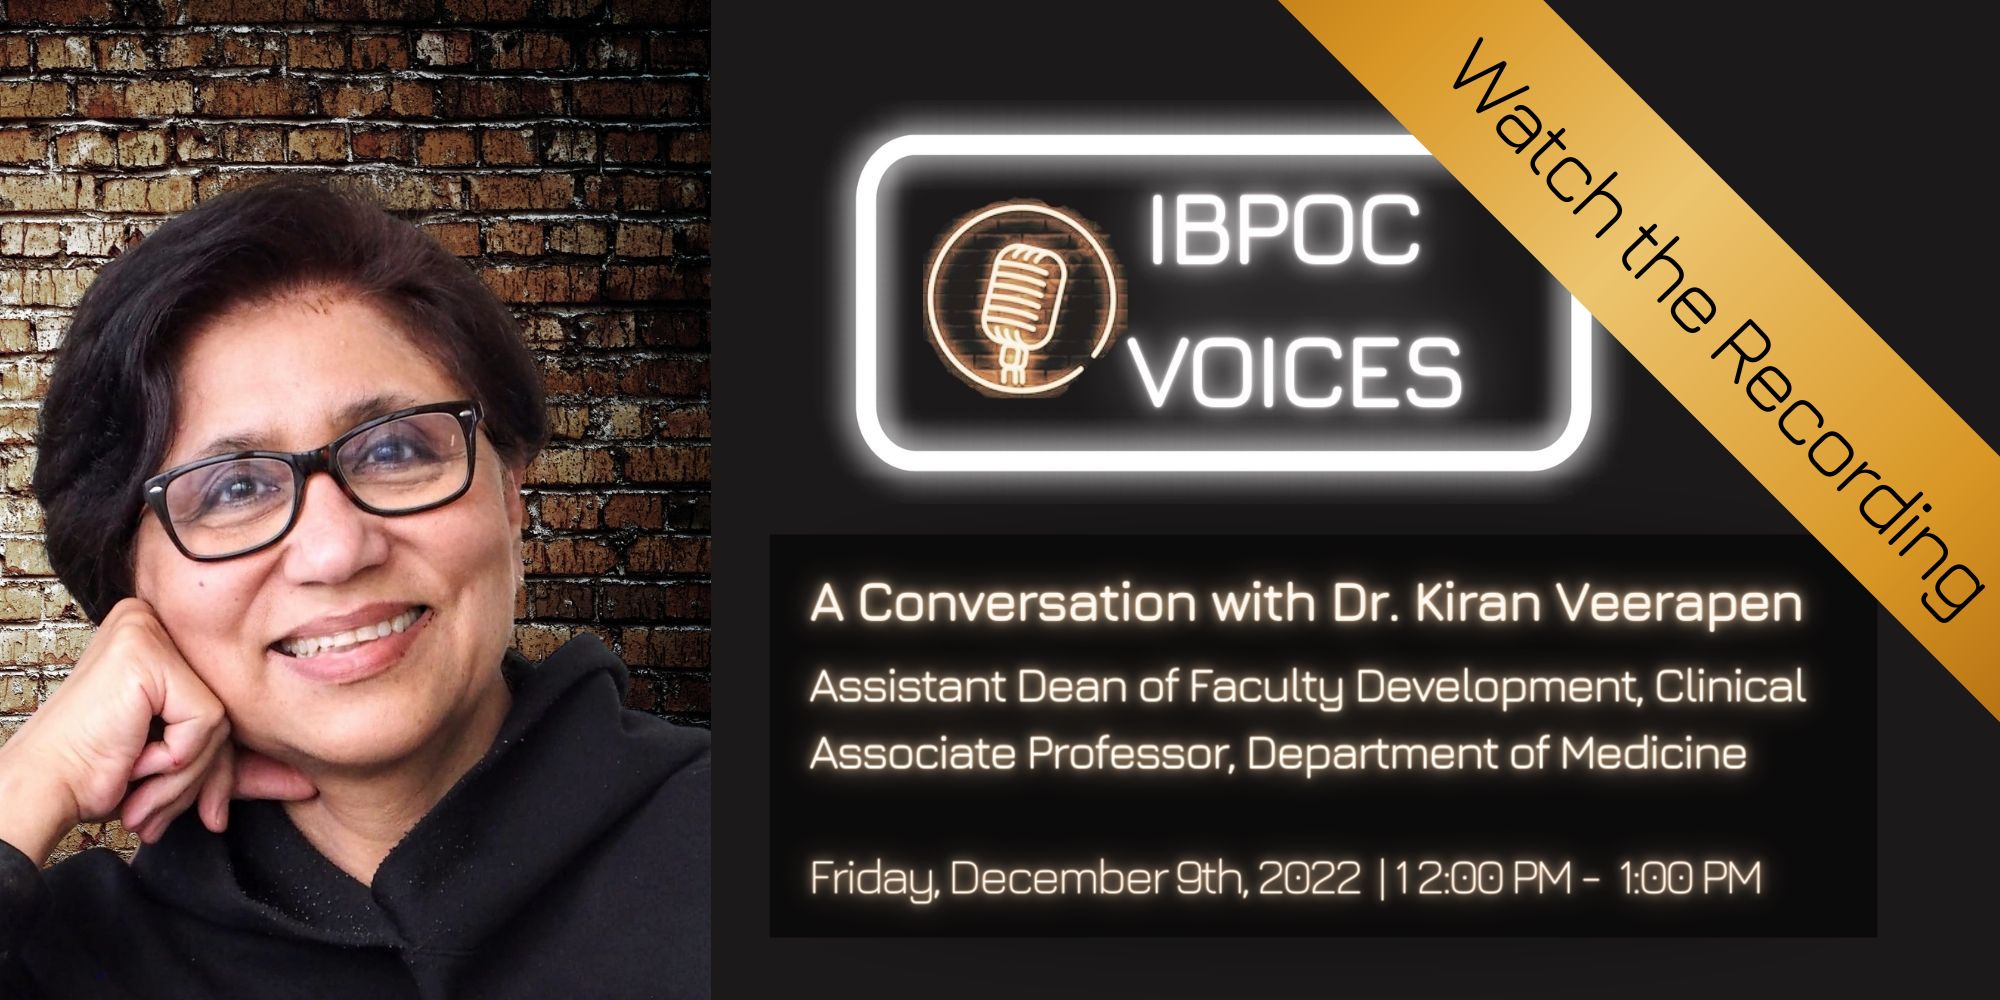 IBPOC Voices: A conversation with Dr. Kiran Veerapen